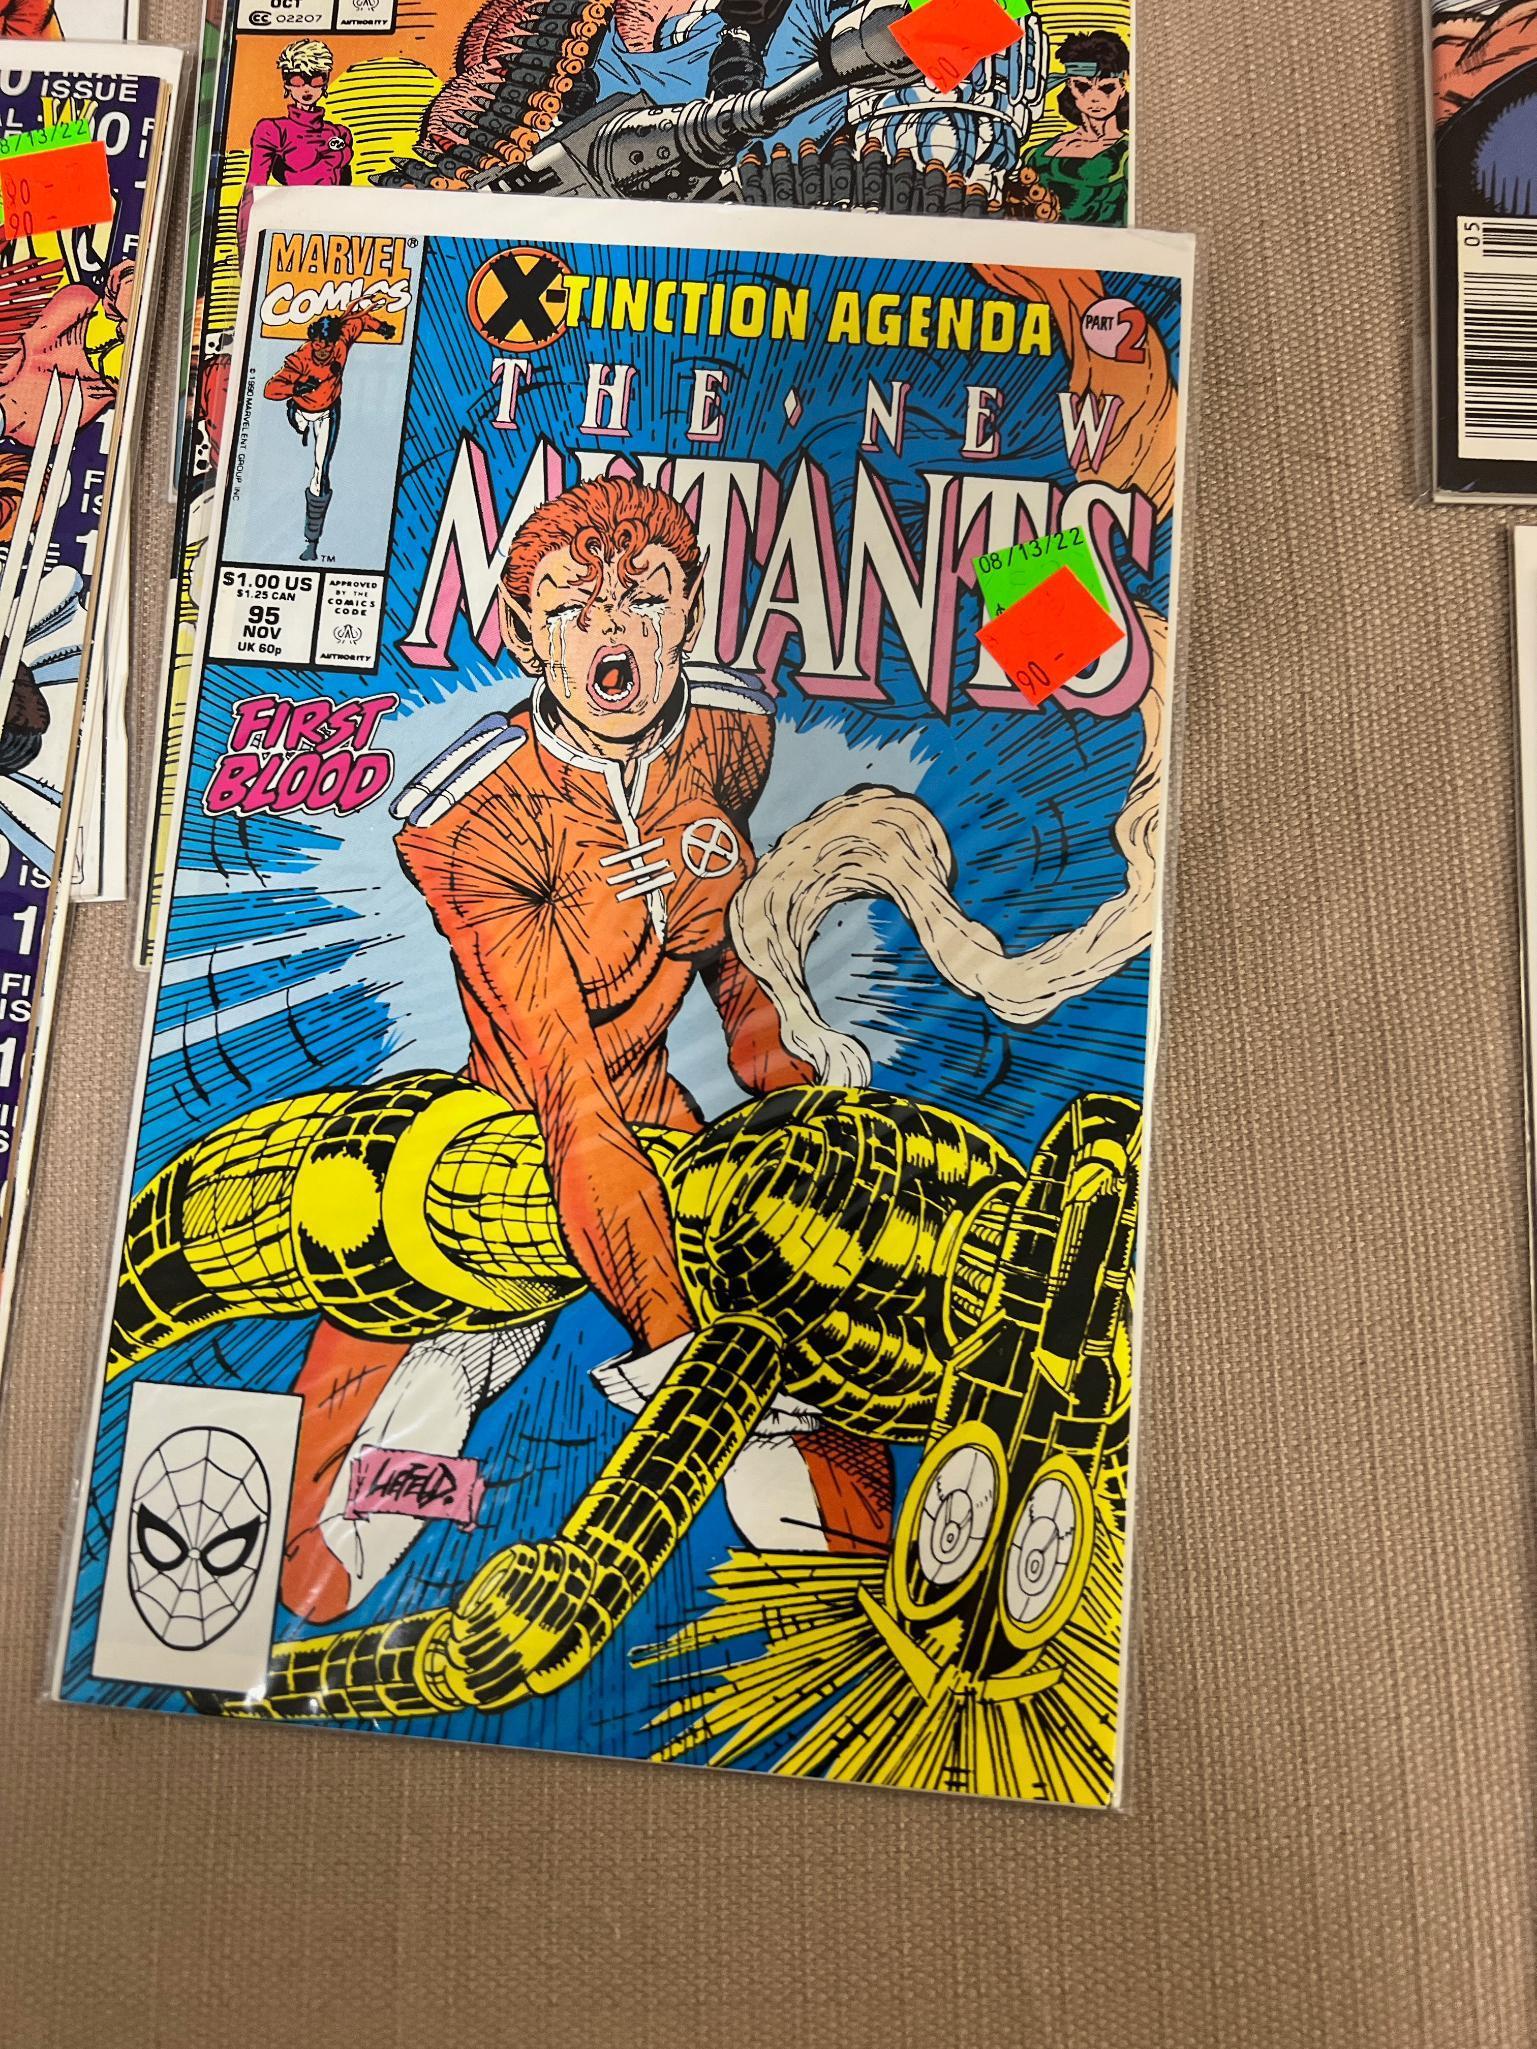 19- The New Mutants Comic Books, issues 81-97, 99, 100